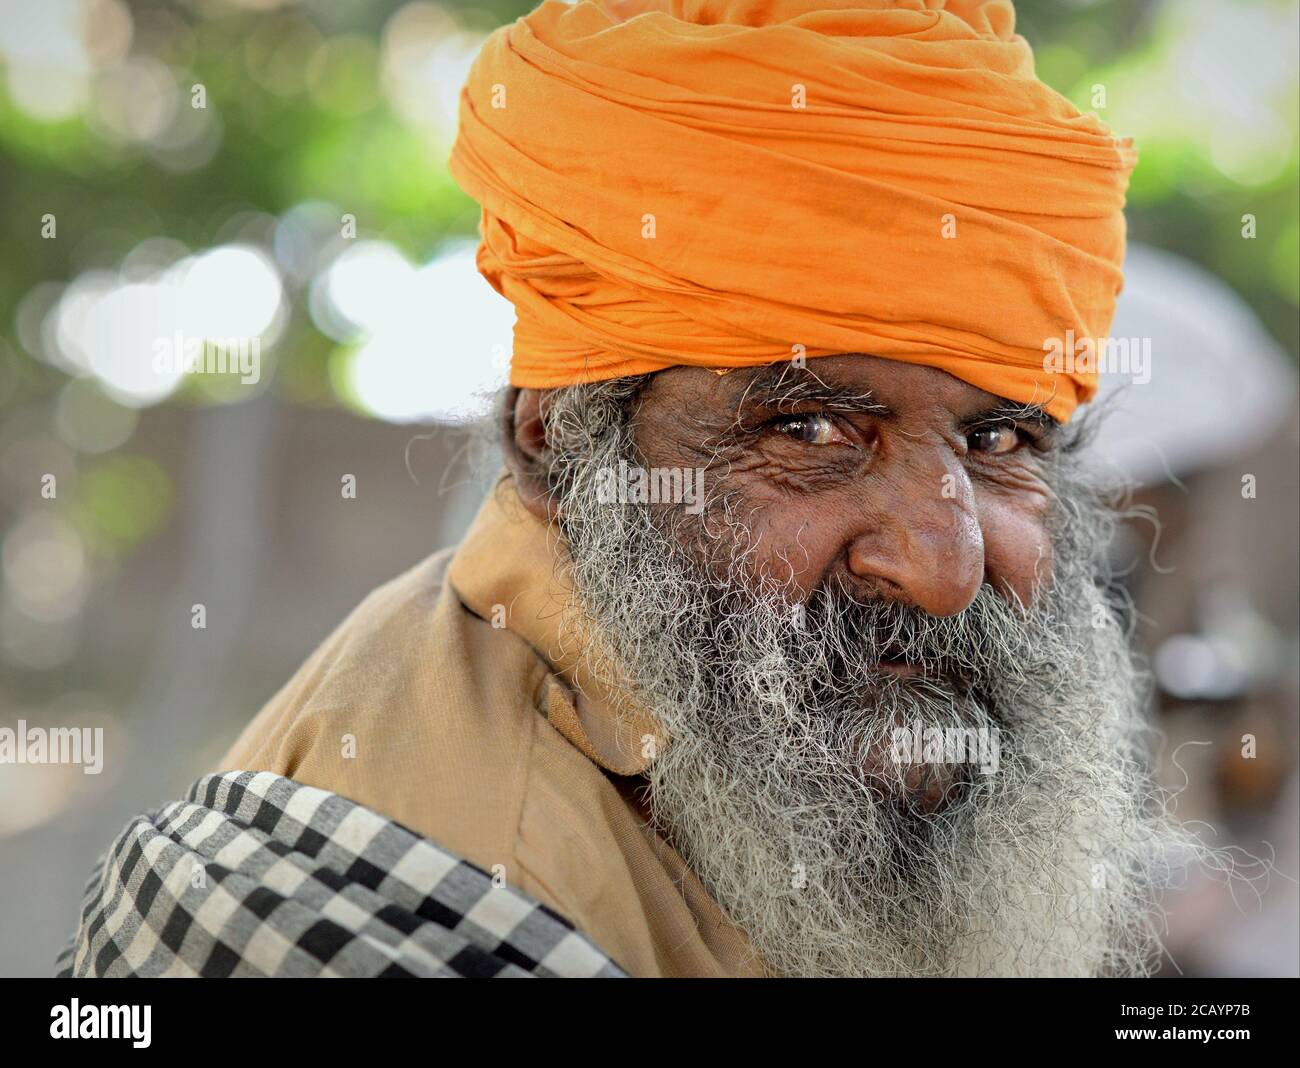 Der alte indische Sikh-Anhänger mit grauem Bart und lächelnden Augen trägt einen orangefarbenen Turban (dastar) und blickt in die Kamera. Stockfoto